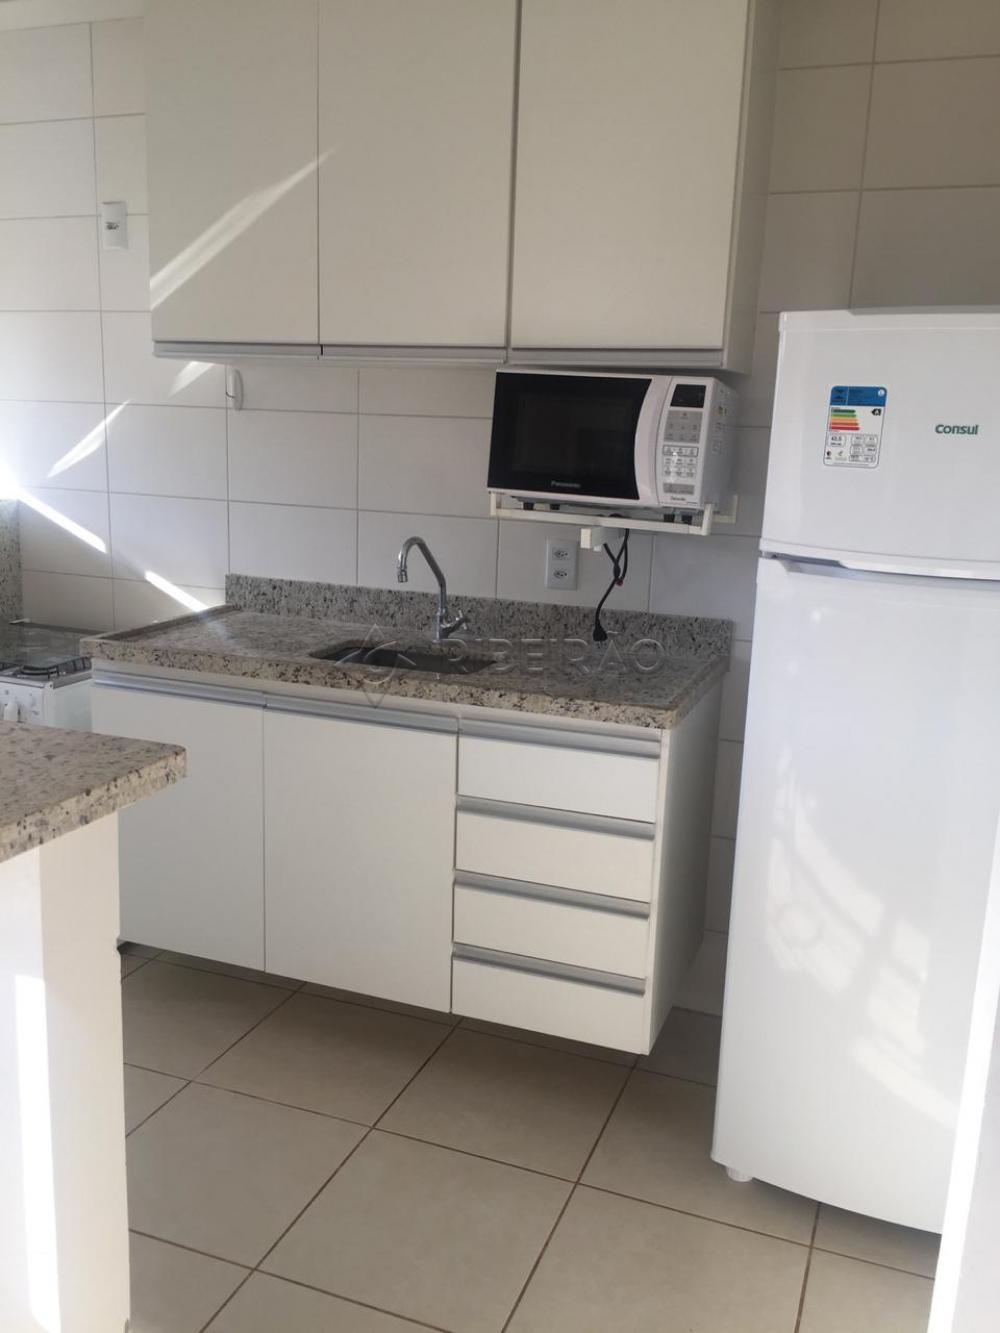 Comprar Apartamento / Flat / Loft / Kitnet em Ribeirão Preto R$ 269.000,00 - Foto 6